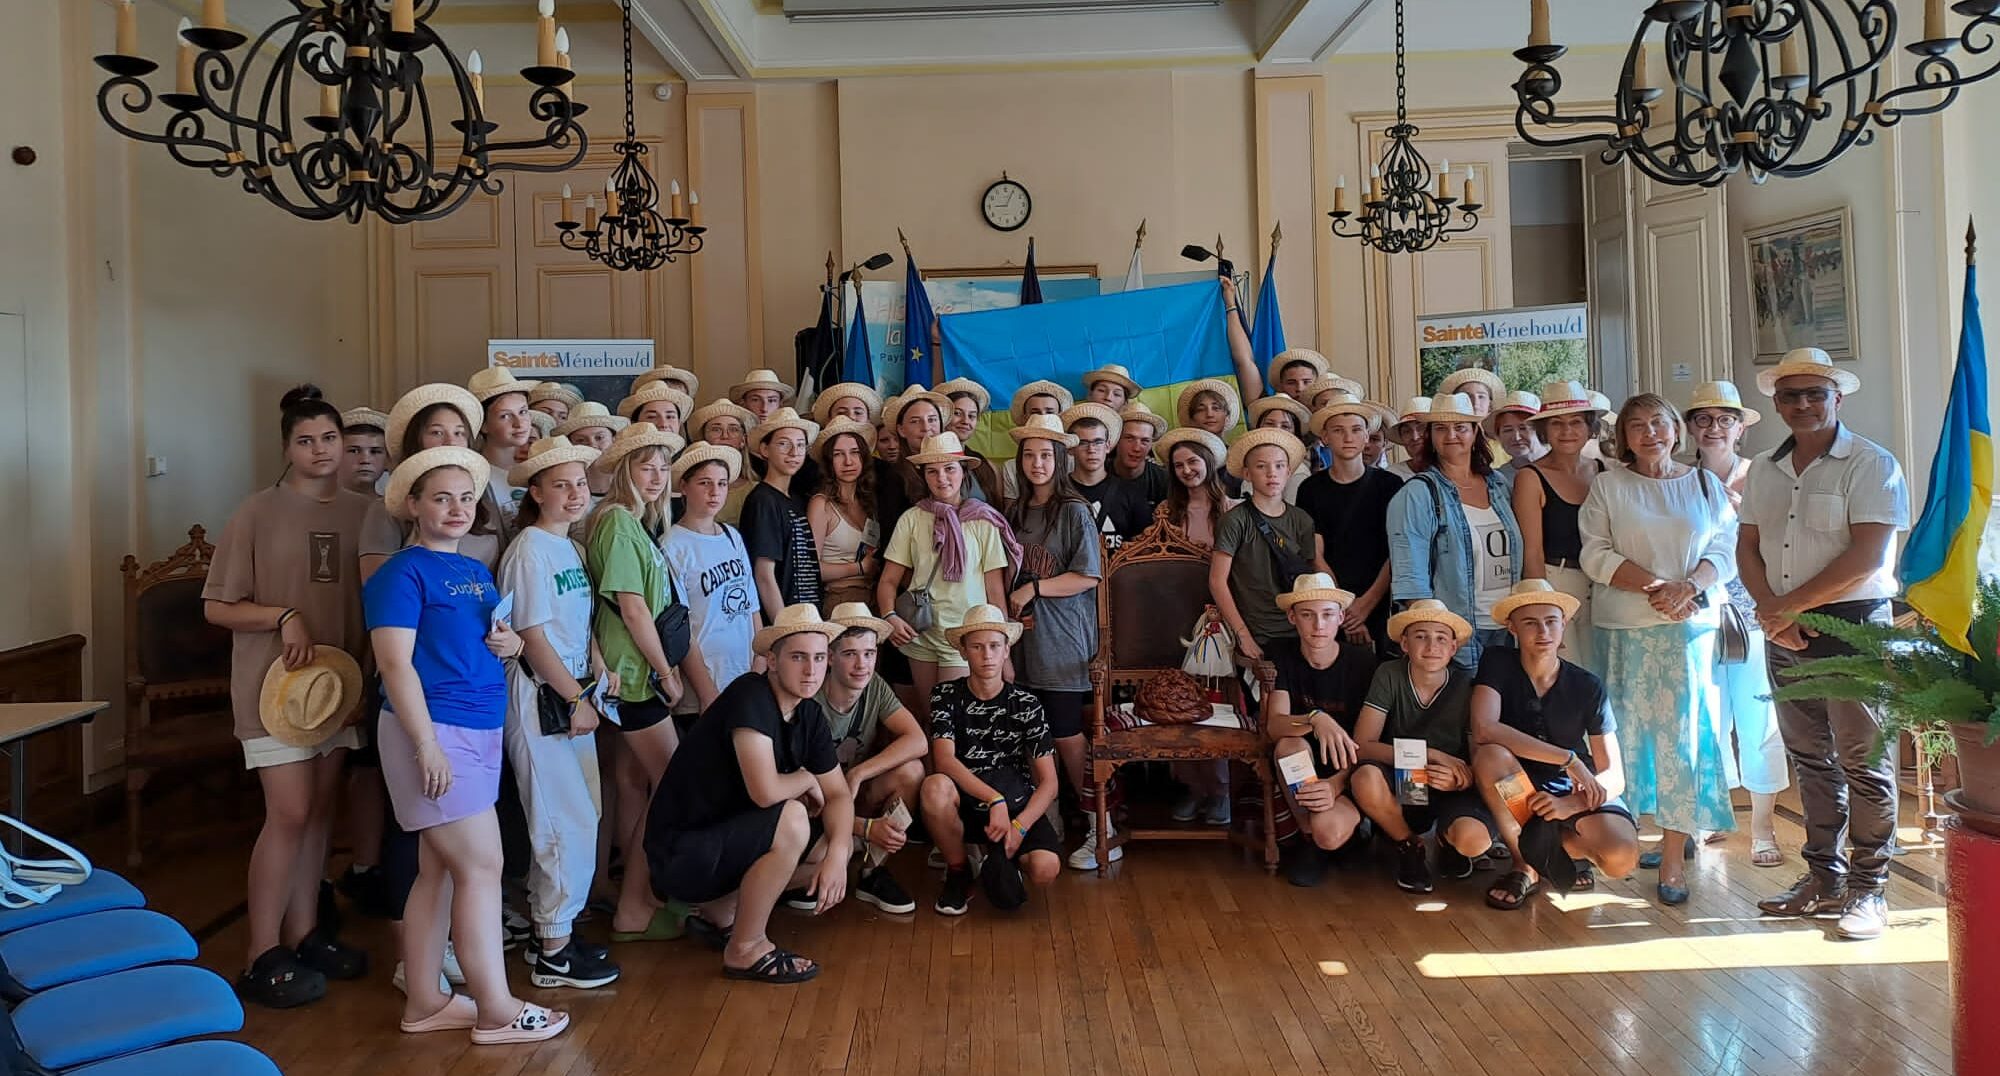 Vacances françaises à Sainte-Menehould pour les enfants de Kalynyvka